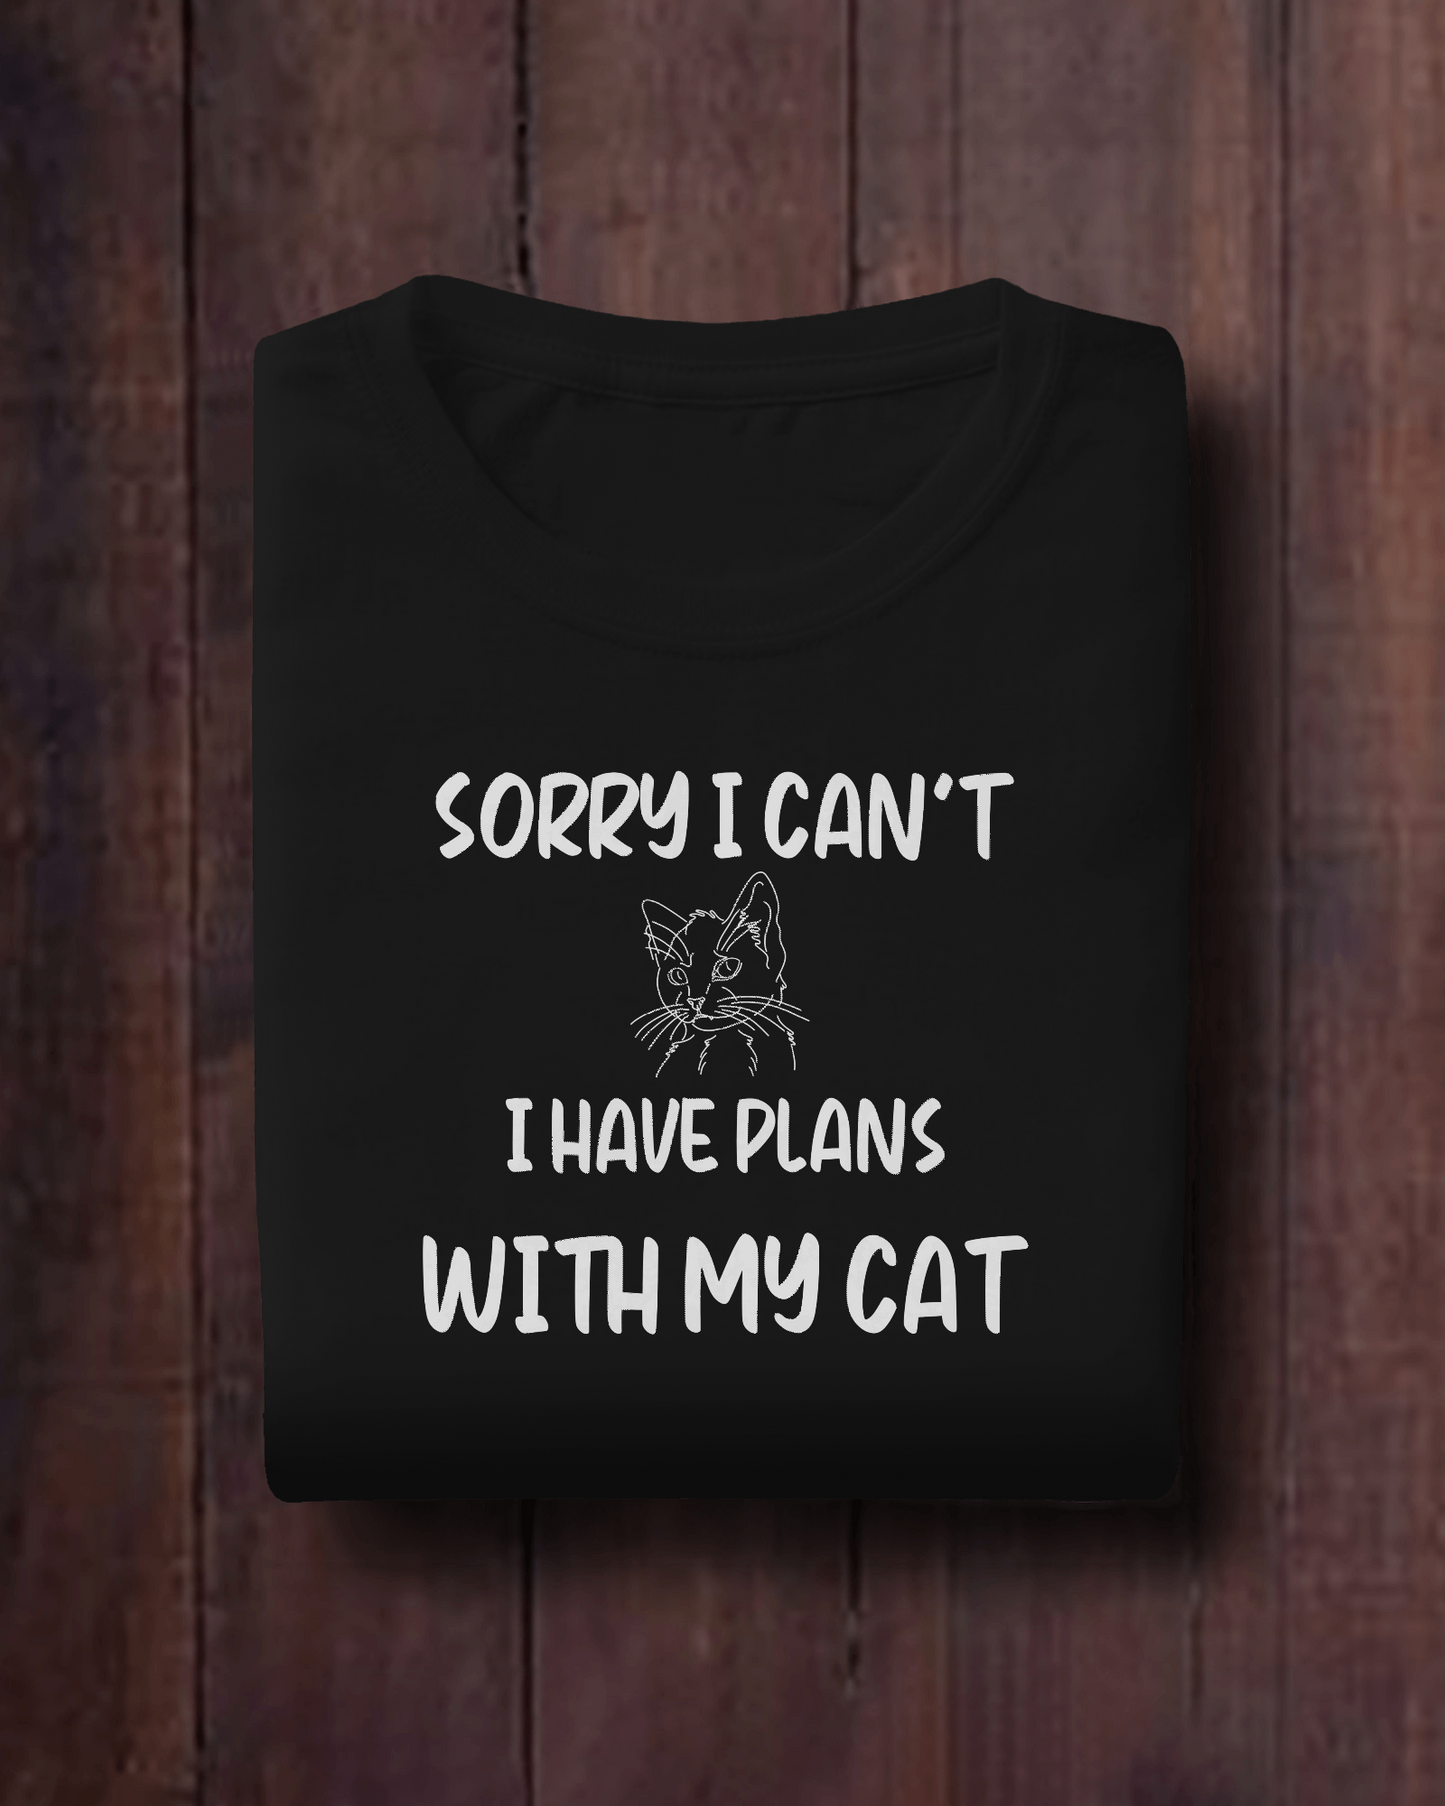 cat shirt for men